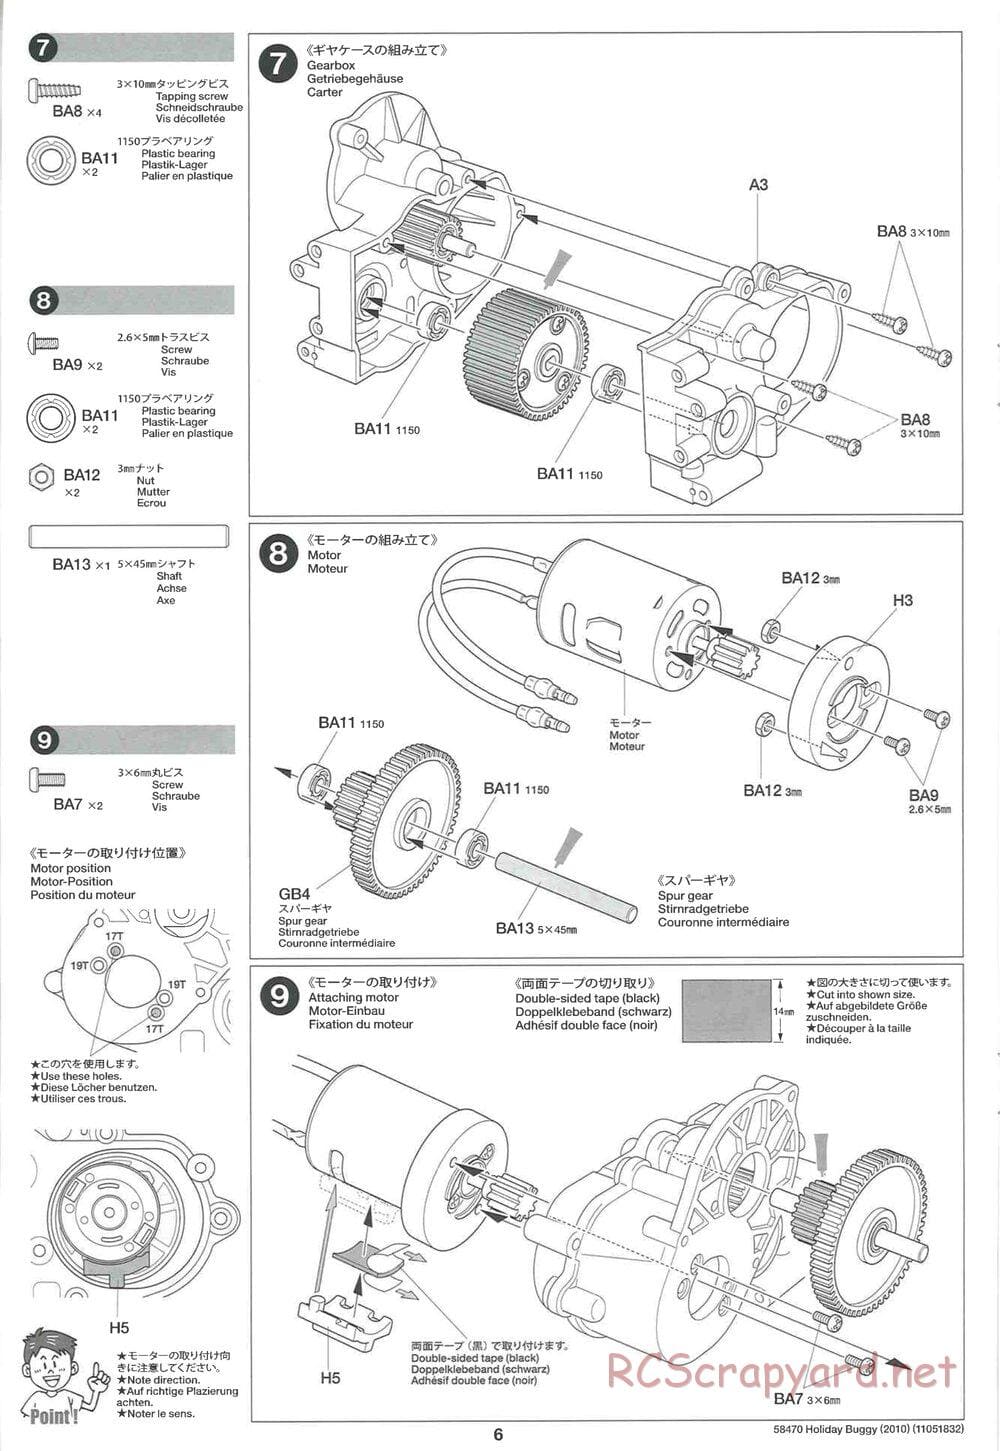 Tamiya - Holiday Buggy 2010 Chassis - Manual - Page 6